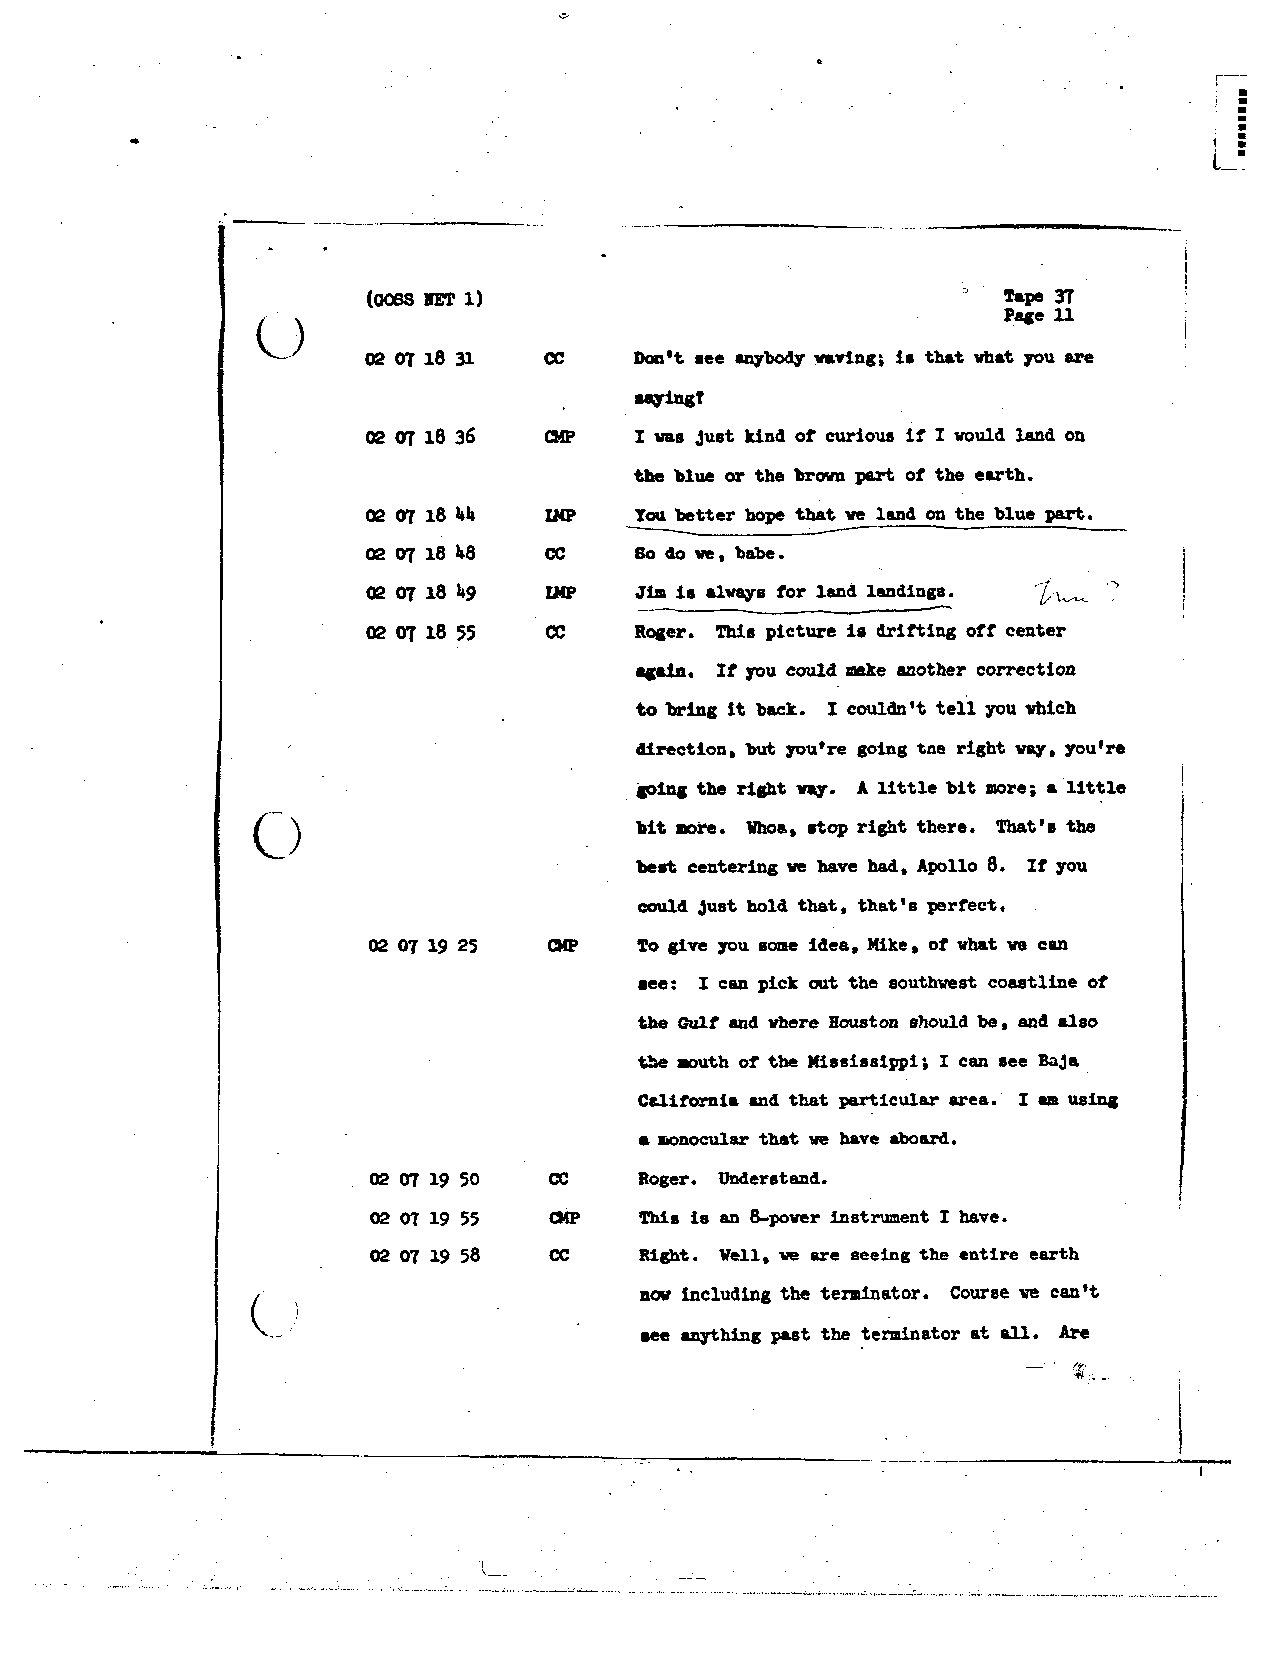 Page 293 of Apollo 8’s original transcript